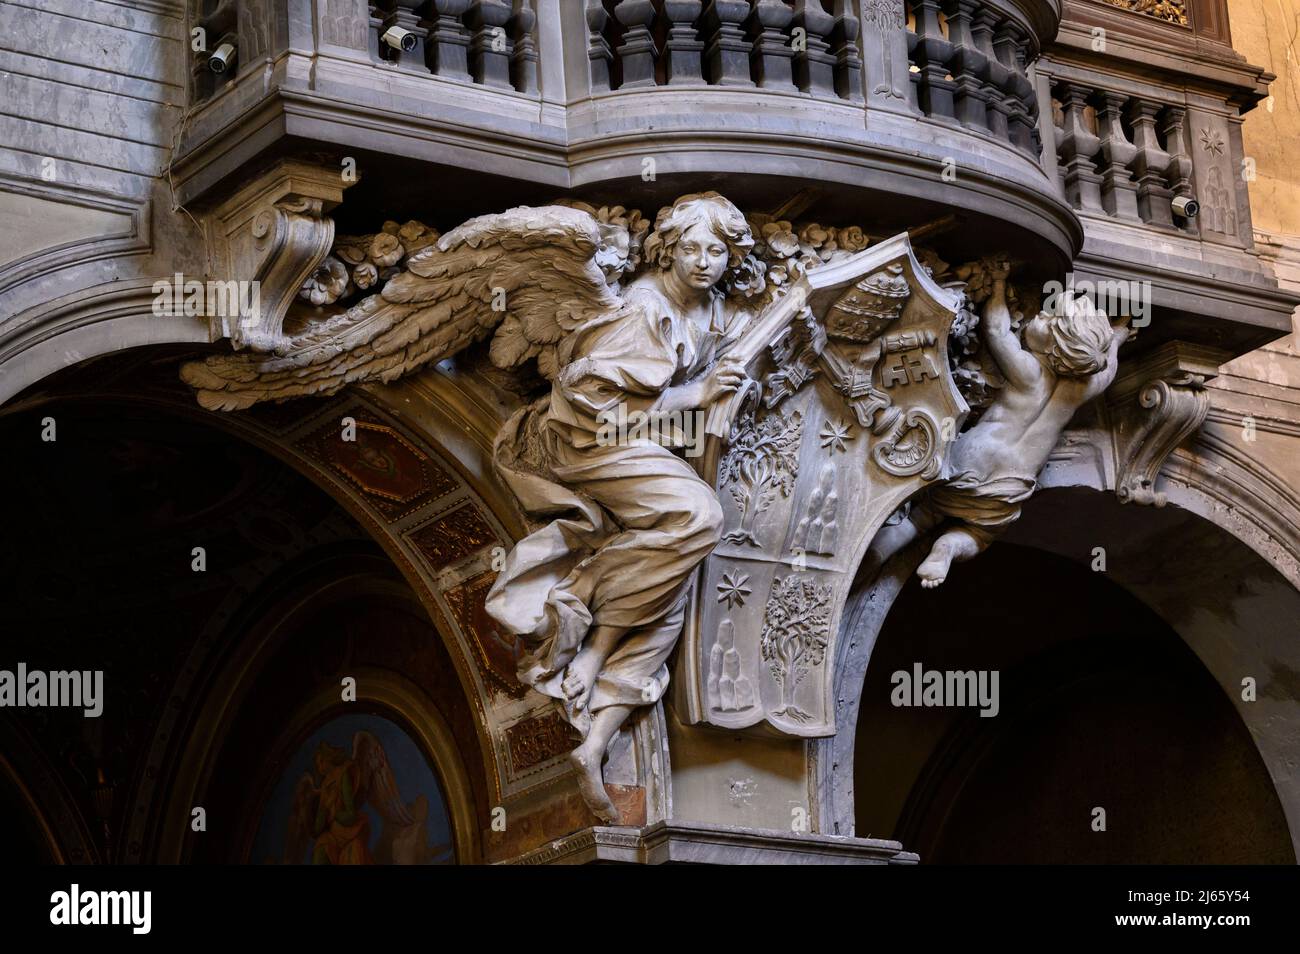 Roma. Italia. Basílica de Santa María del Popolo. Cantoria / órgano loft, detalle mostrando un ángel que sostiene el escudo de armas del Papa Alejandro VII Aprox Foto de stock